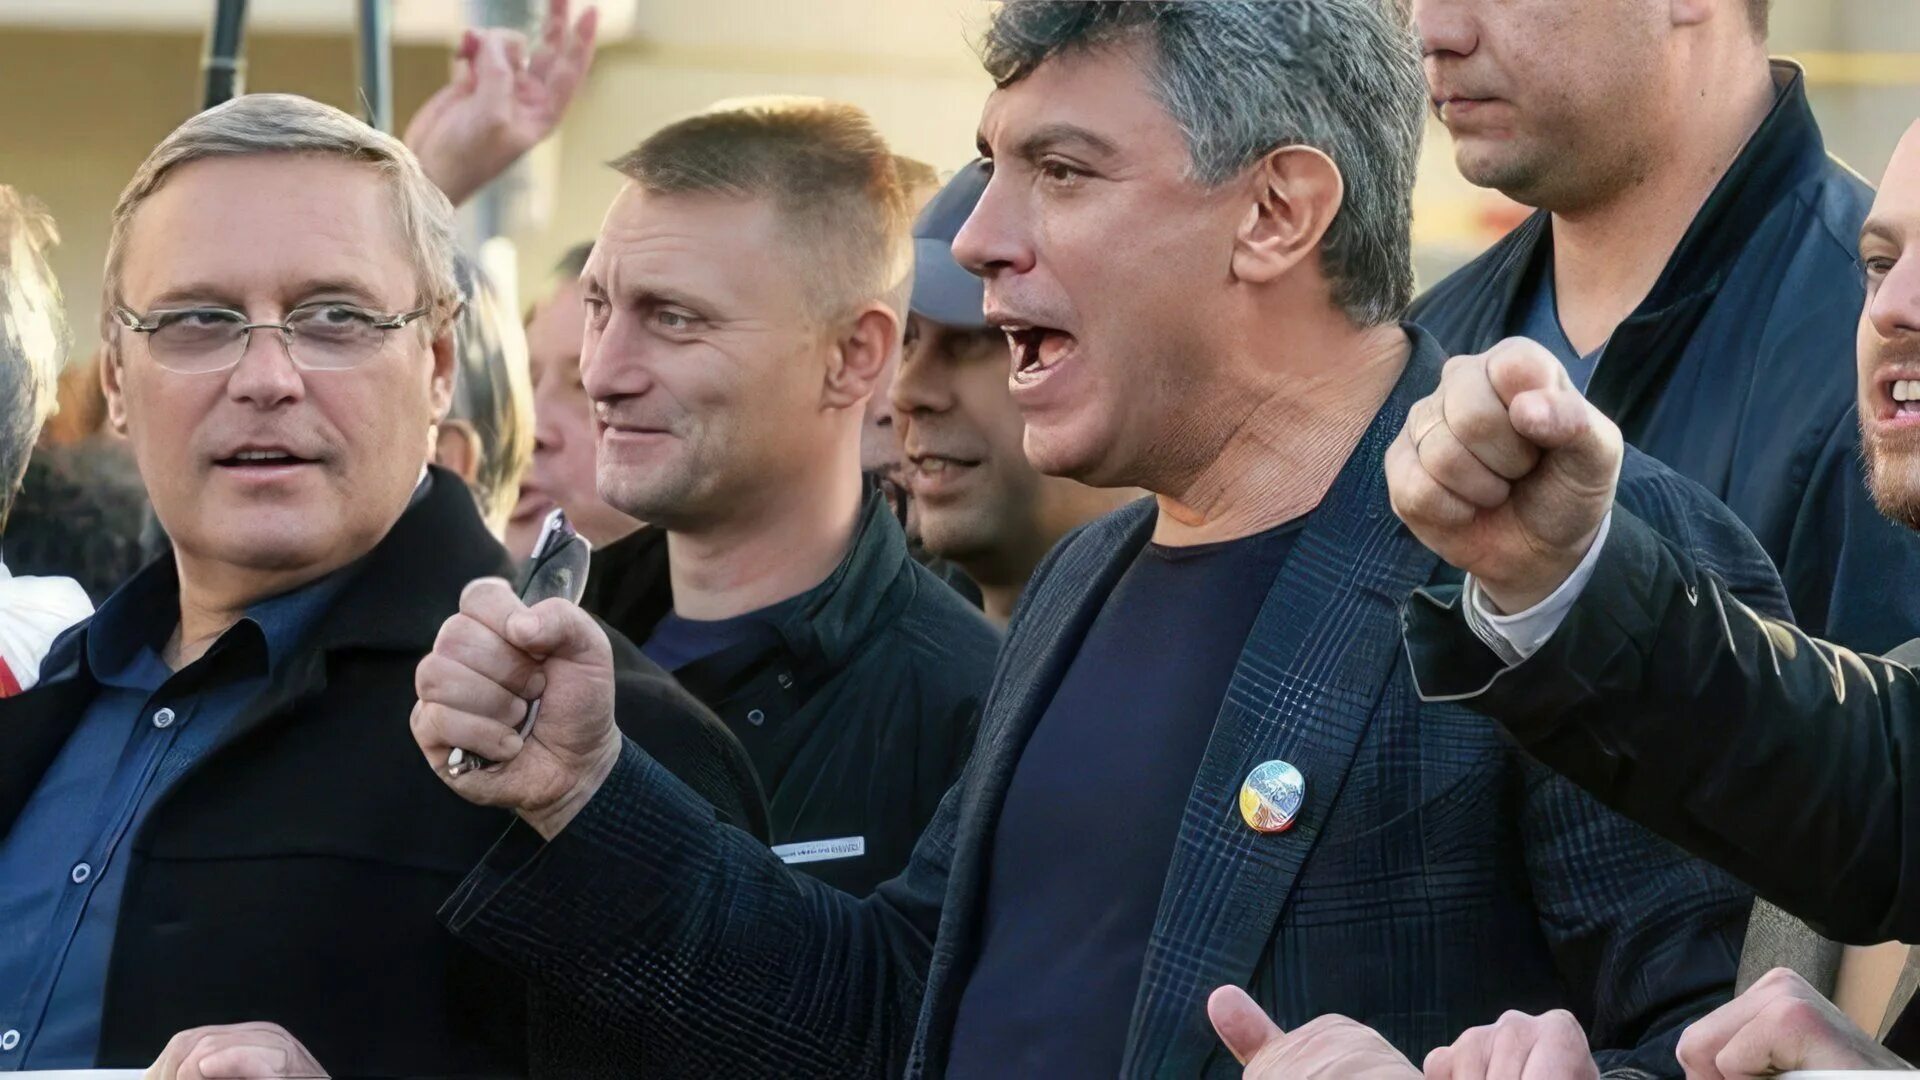 Назначенная оппозиция. Касьянов Навальный Немцов.